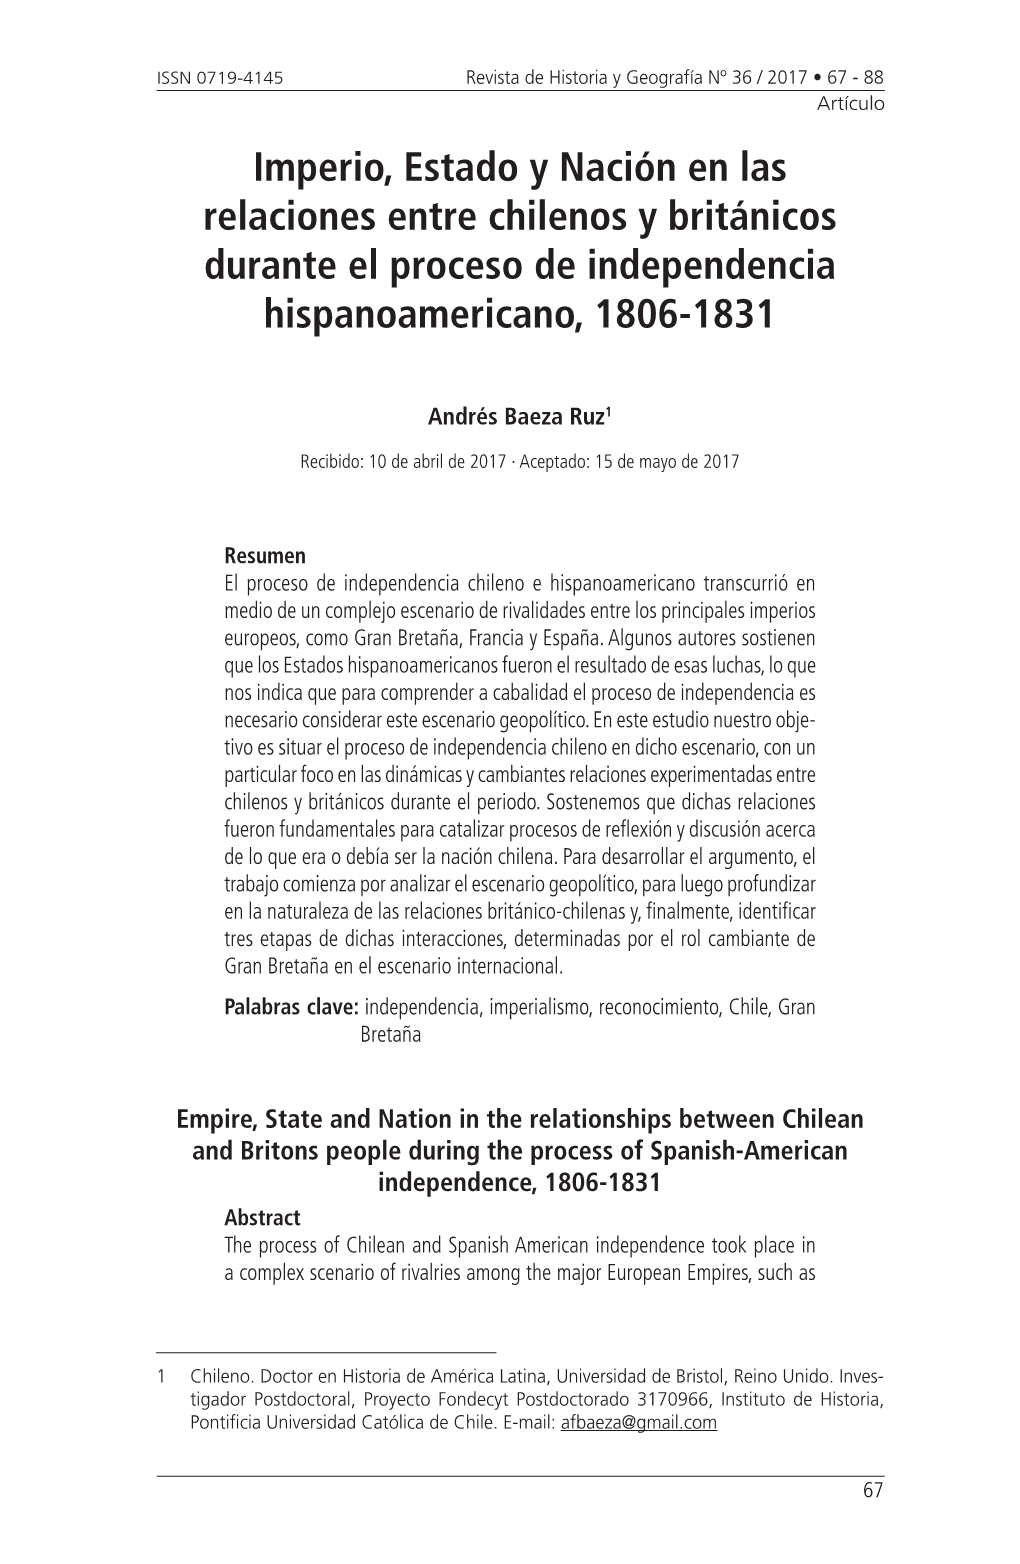 Imperio, Estado Y Nación En Las Relaciones Entre Chilenos Y Británicos Durante El Proceso De Independencia Hispanoamericano, 1806-1831